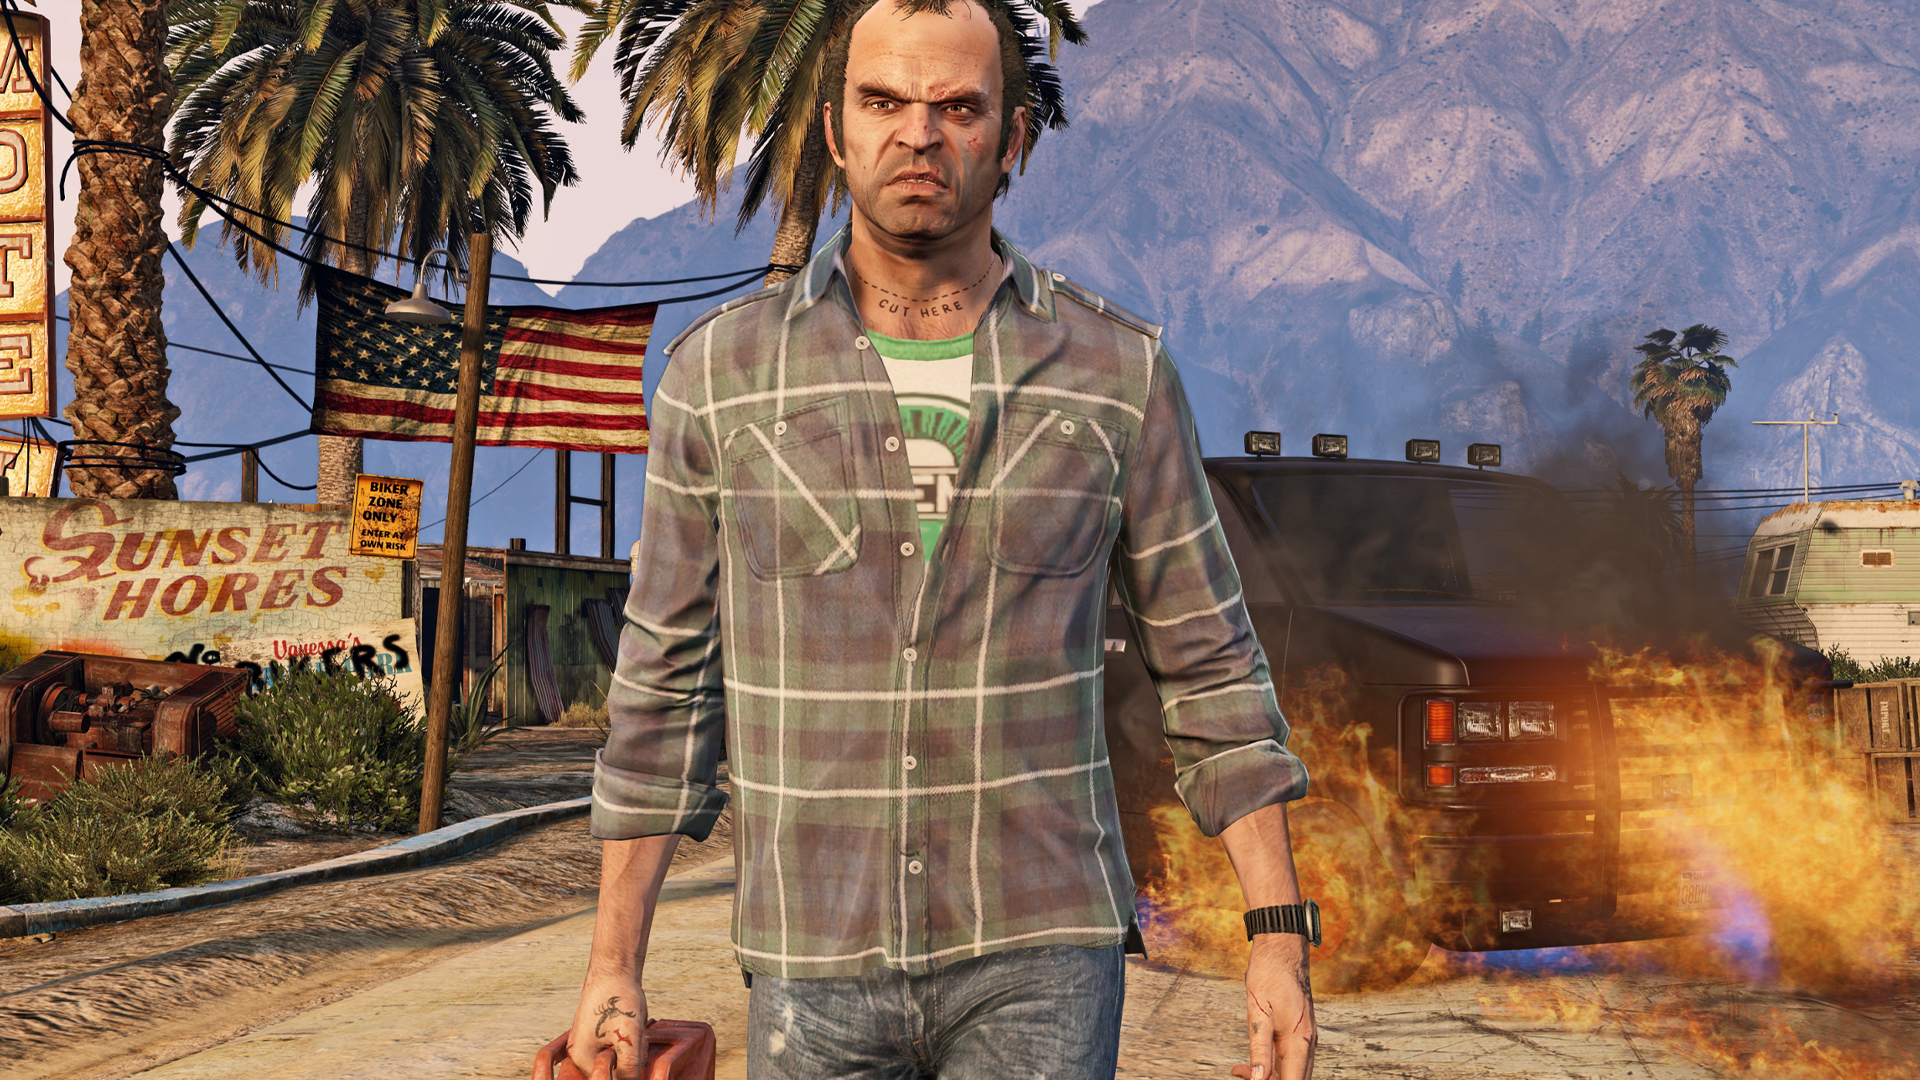 La franchise Grand Theft Auto dépasse les 385 millions d'unités vendues.